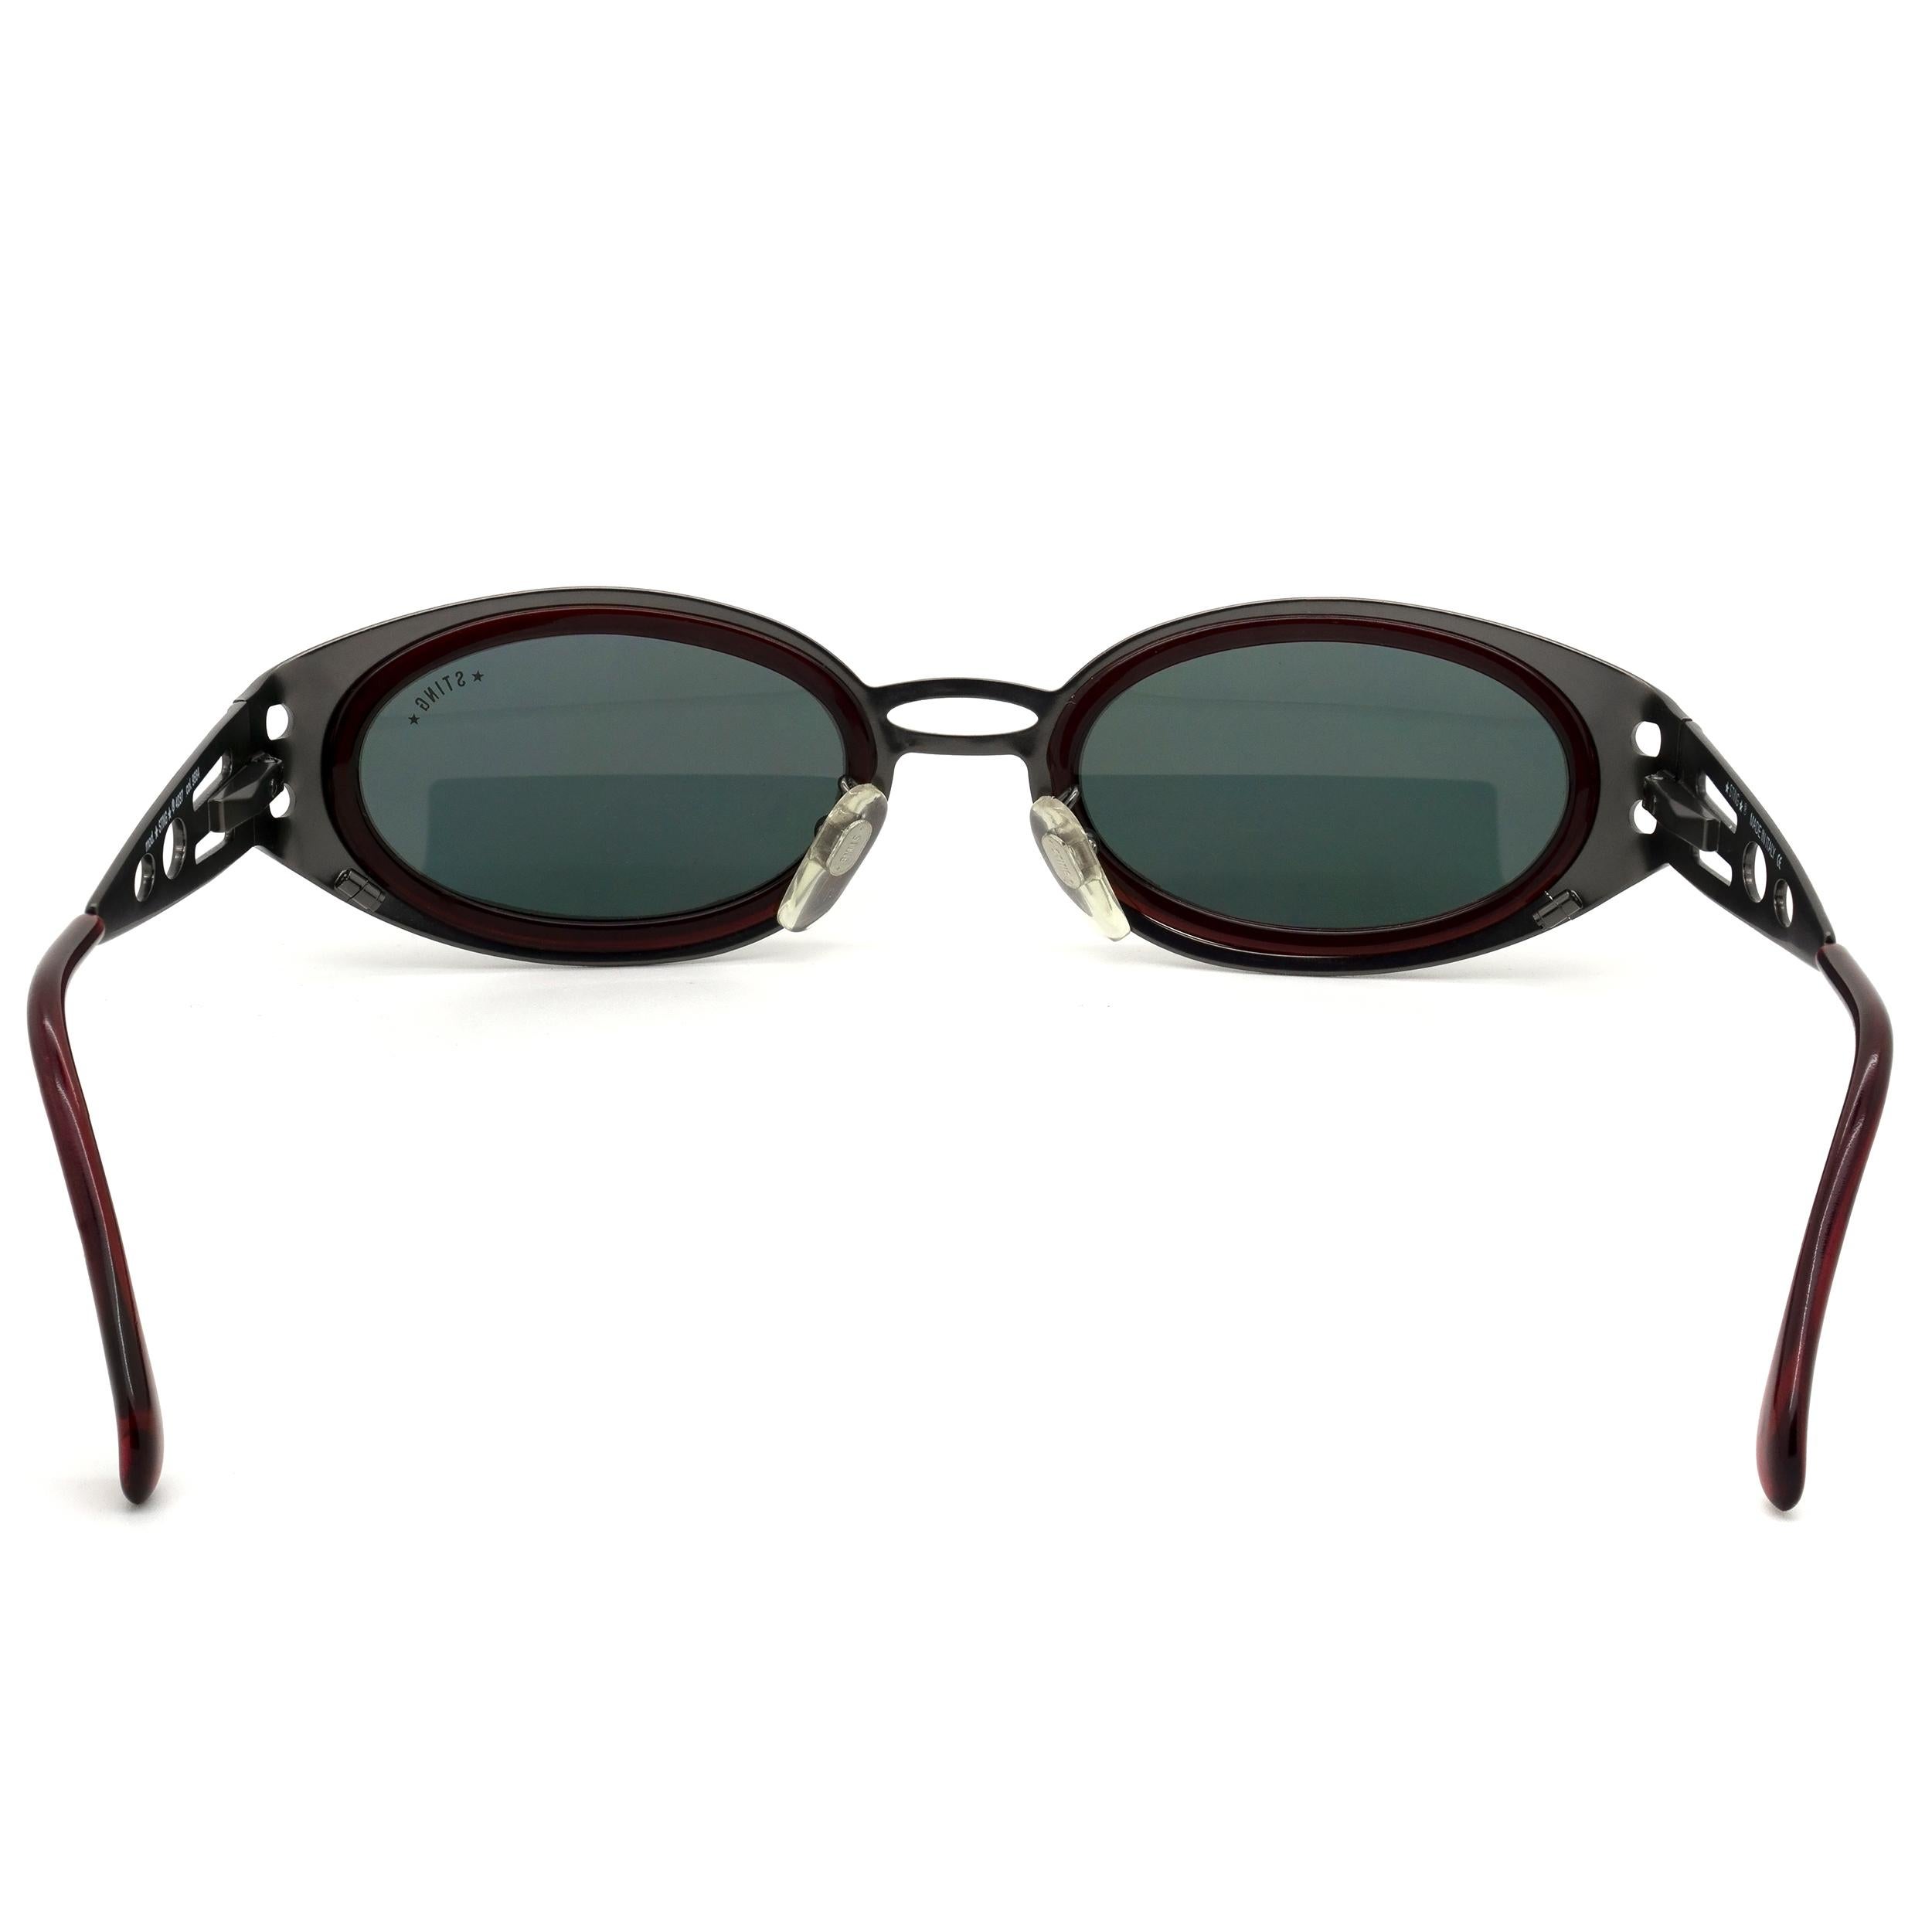 Sting vintage sunglasses steampunk In New Condition For Sale In Santa Clarita, CA